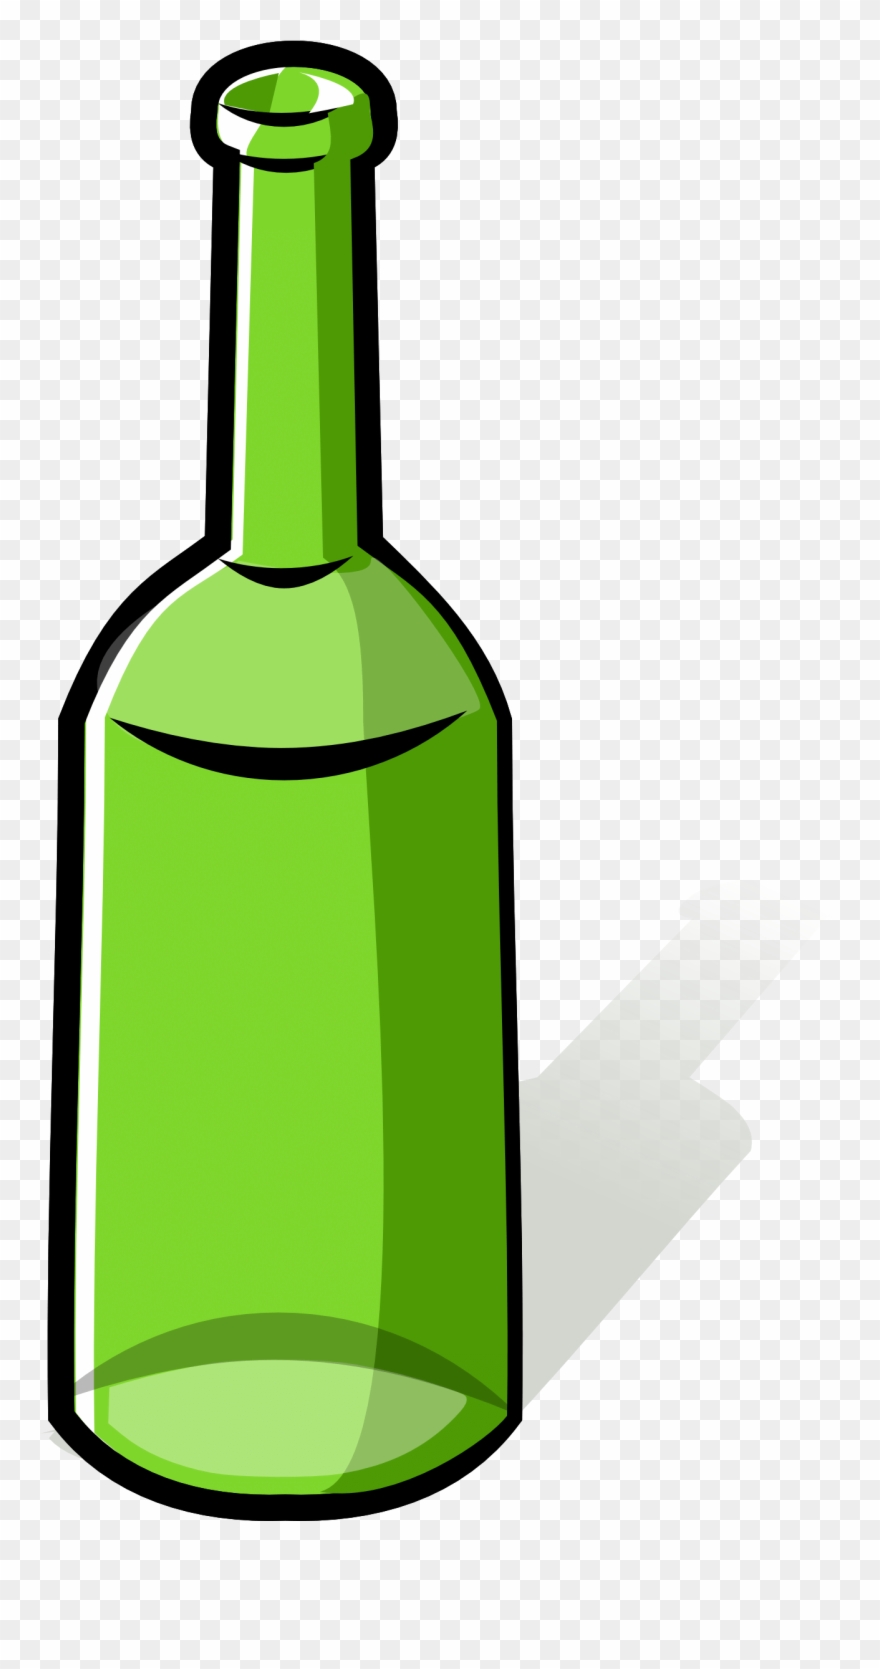 bottle clipart glass bottle